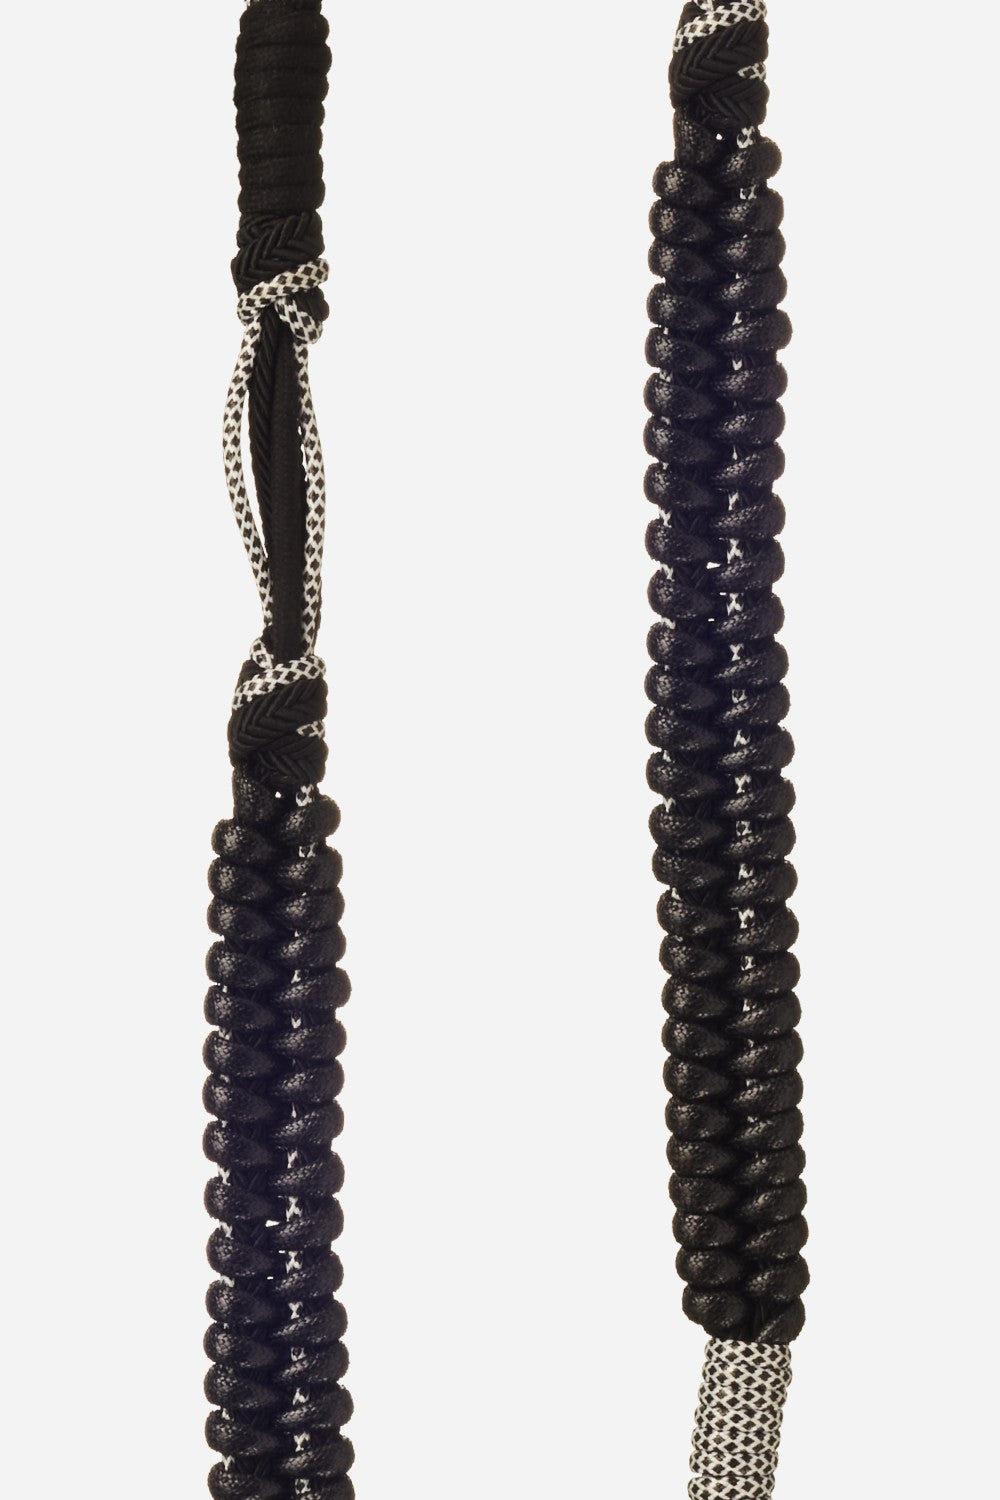 Roxanne Long Chain Black 120 cm